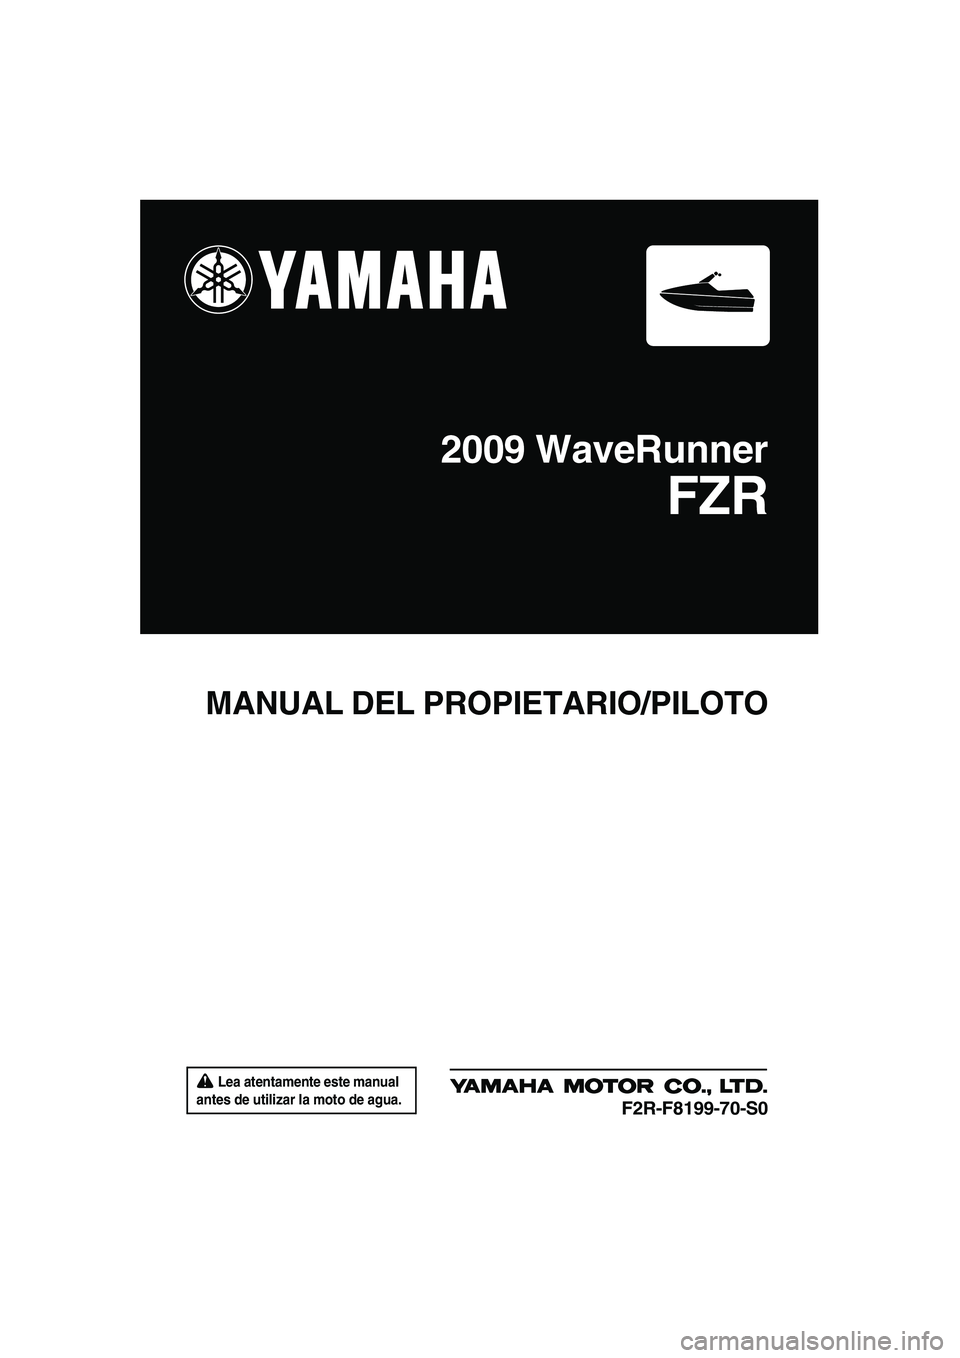 YAMAHA FZR SVHO 2009  Manuale de Empleo (in Spanish)  Lea atentamente este manual 
antes de utilizar la moto de agua.
MANUAL DEL PROPIETARIO/PILOTO
2009 WaveRunner
FZR
F2R-F8199-70-S0
UF2R70S0.book  Page 1  Friday, November 7, 2008  11:37 AM 